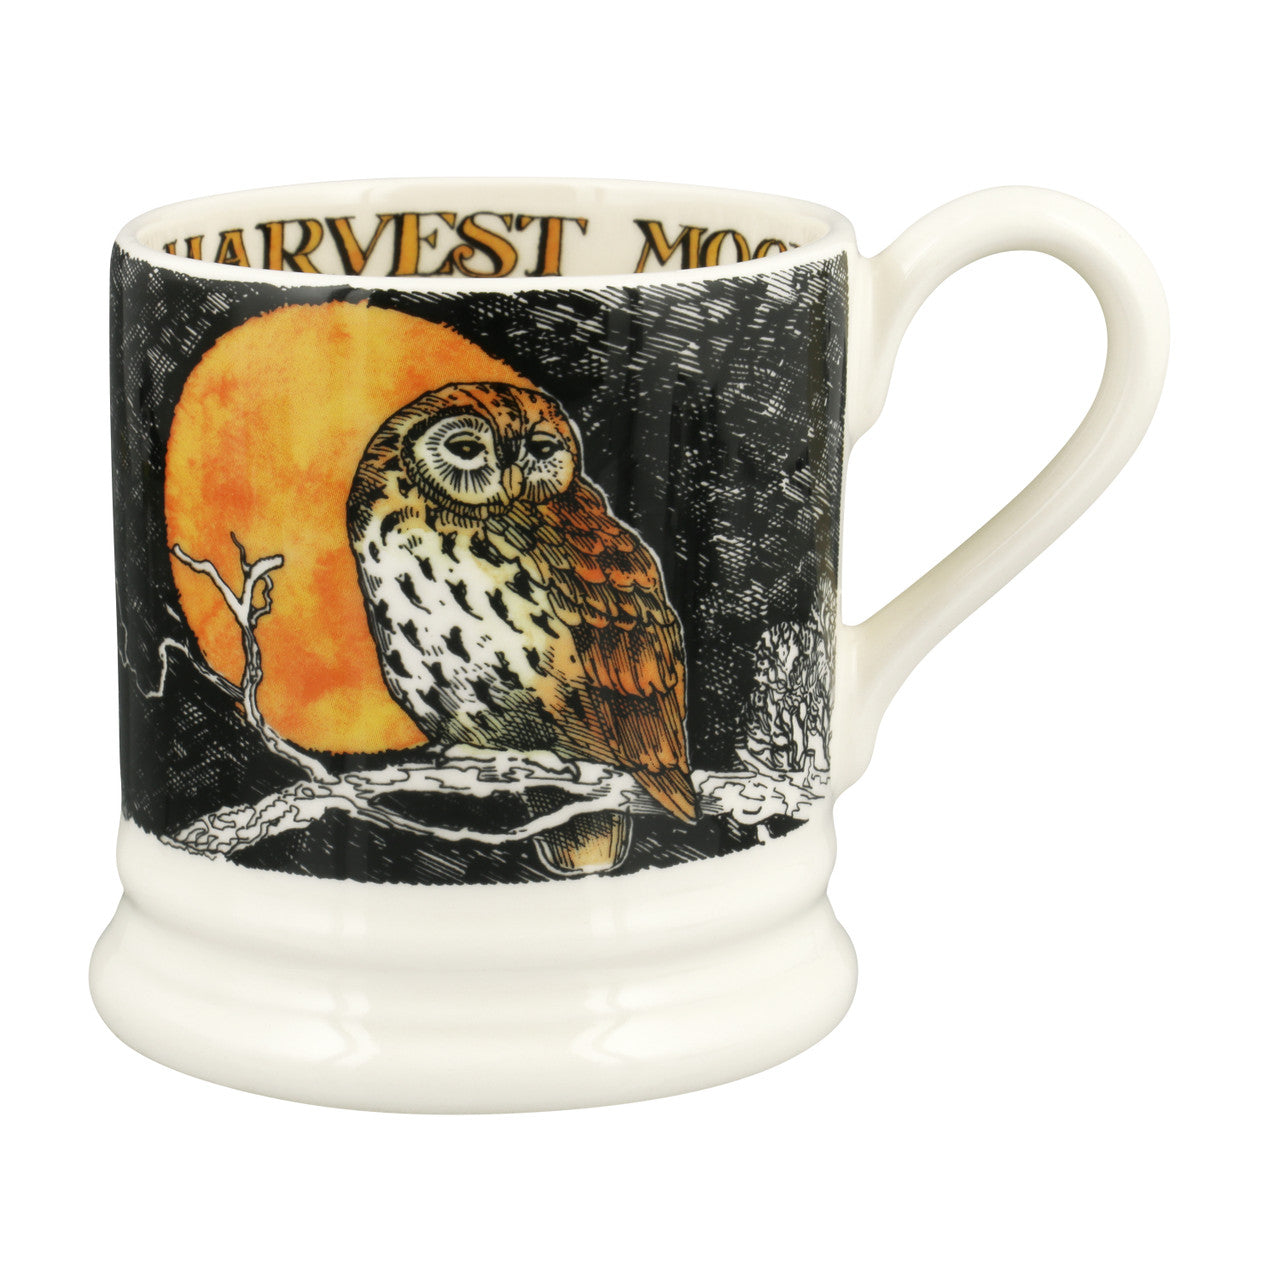 Emma Bridgewater Harvest Moon 1/2 Pint Mug